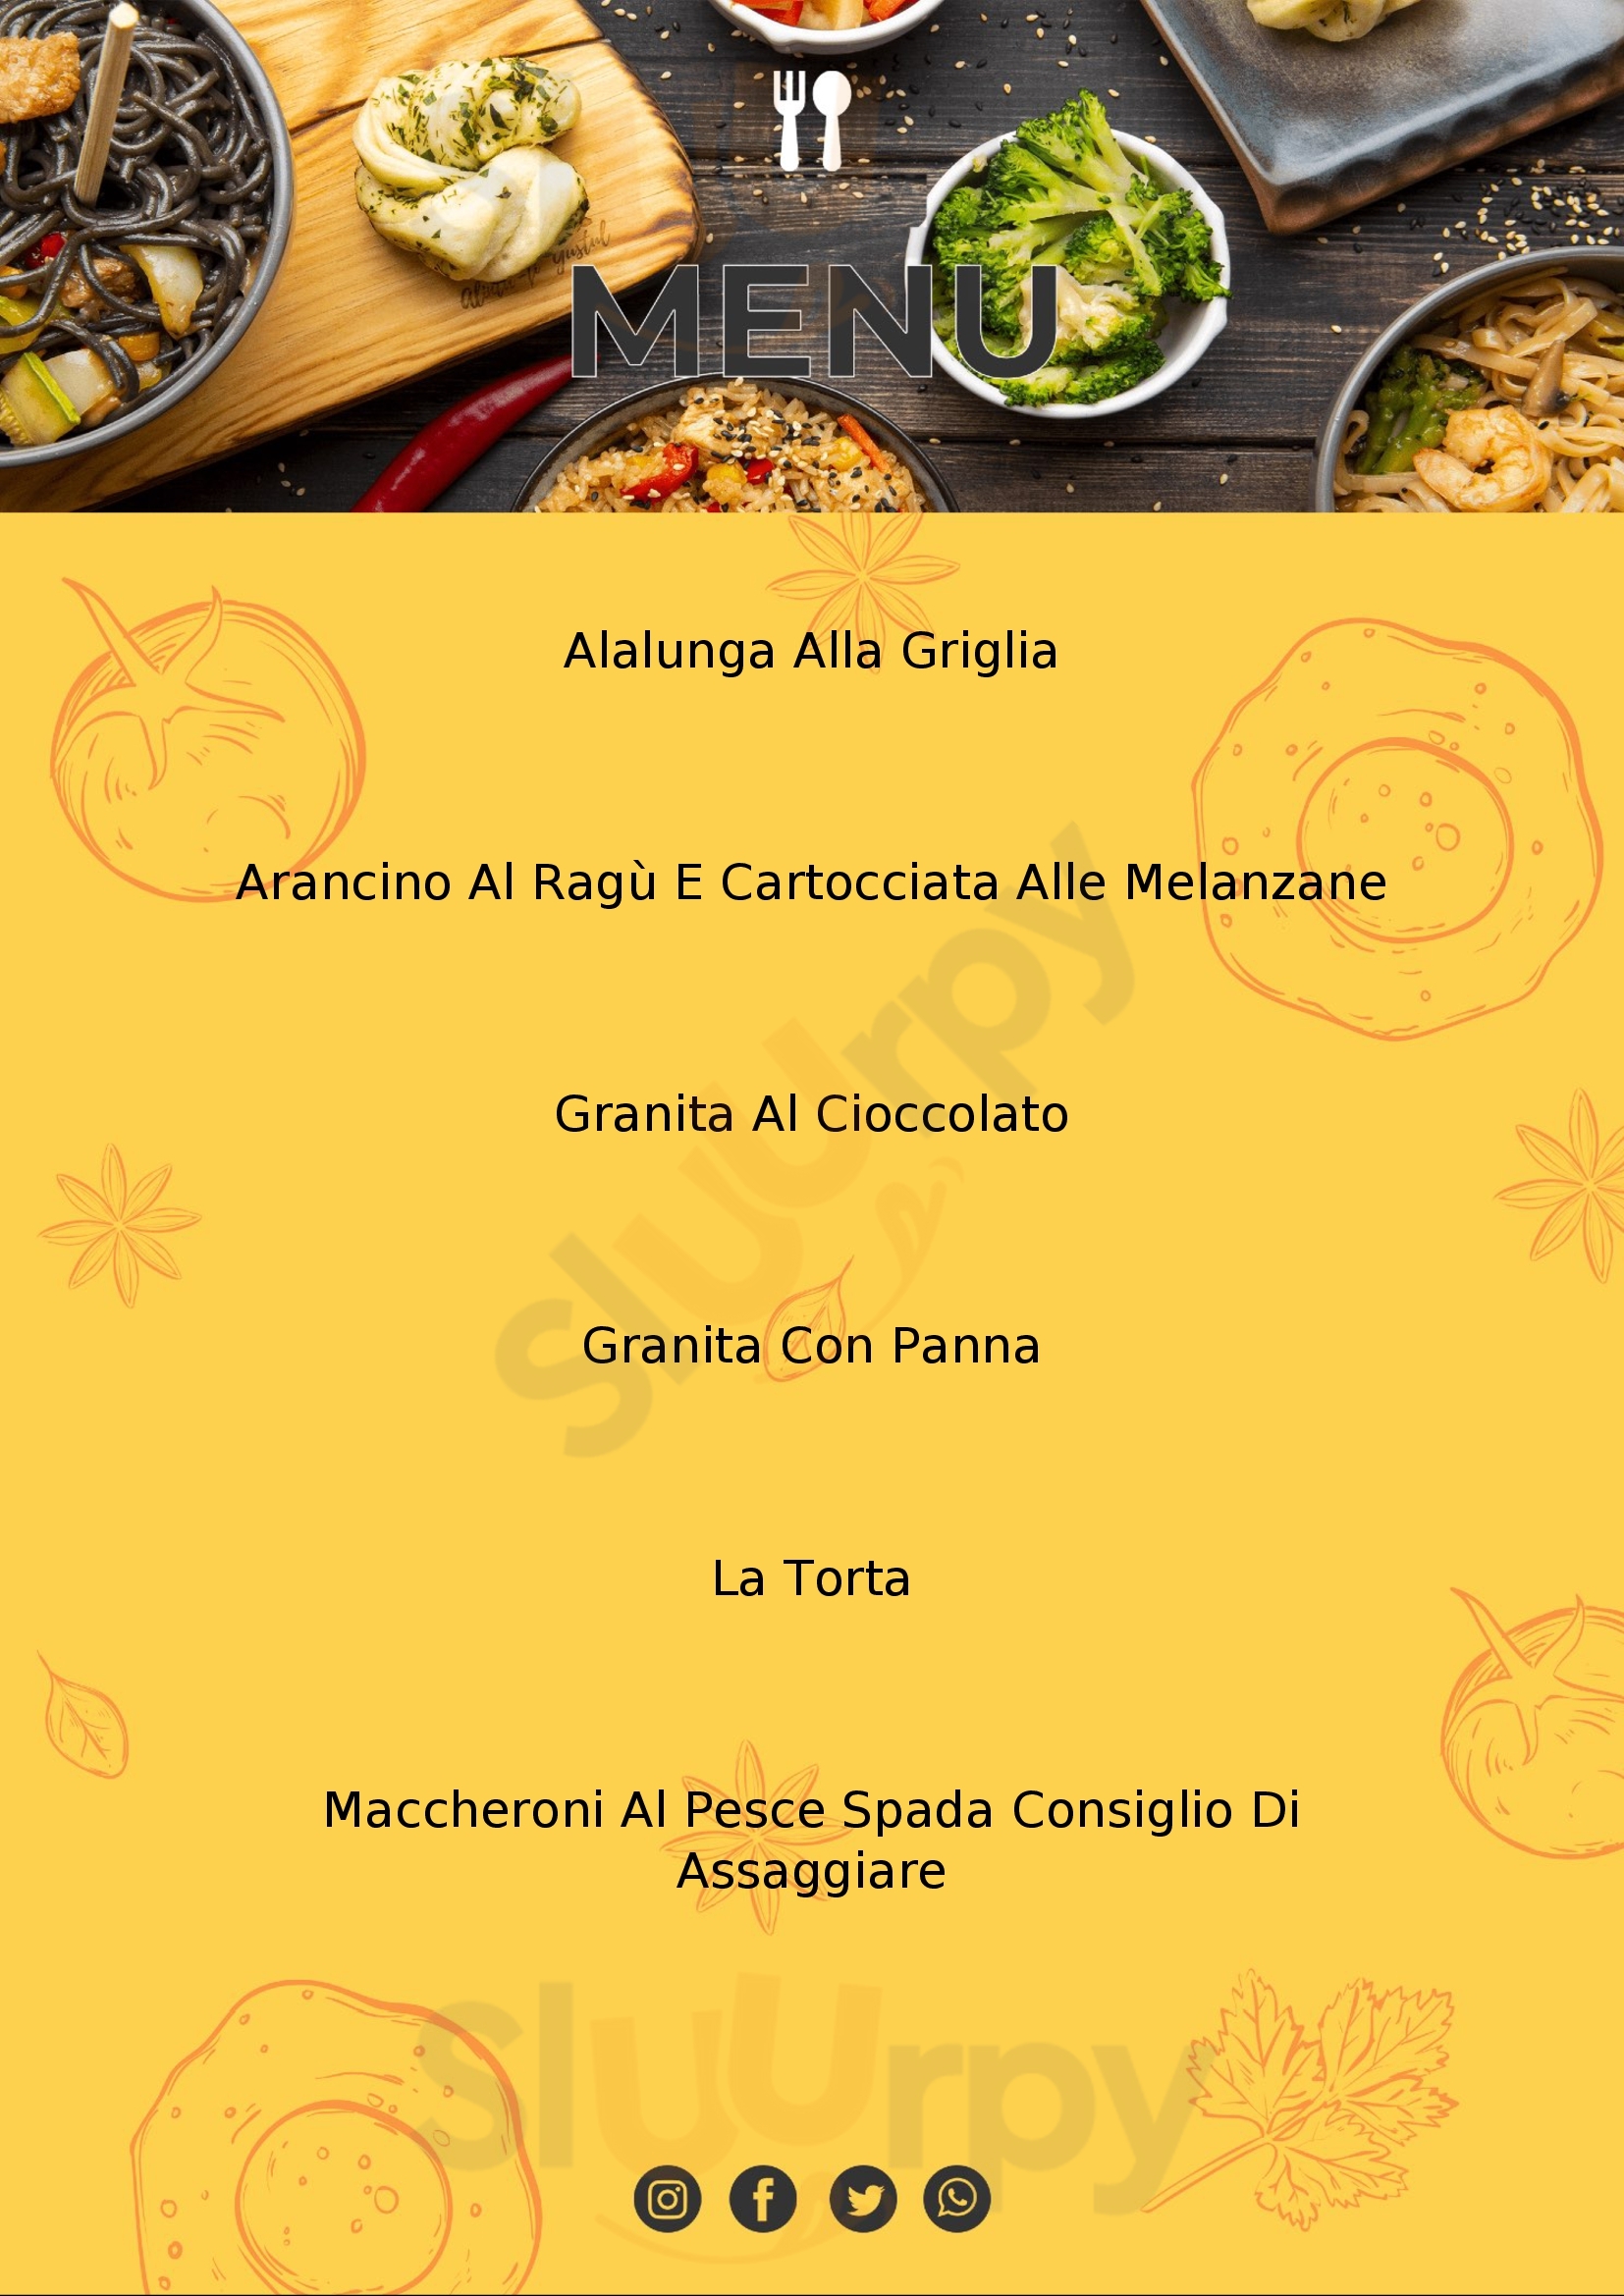 La Tavernetta Eventi Catania menù 1 pagina